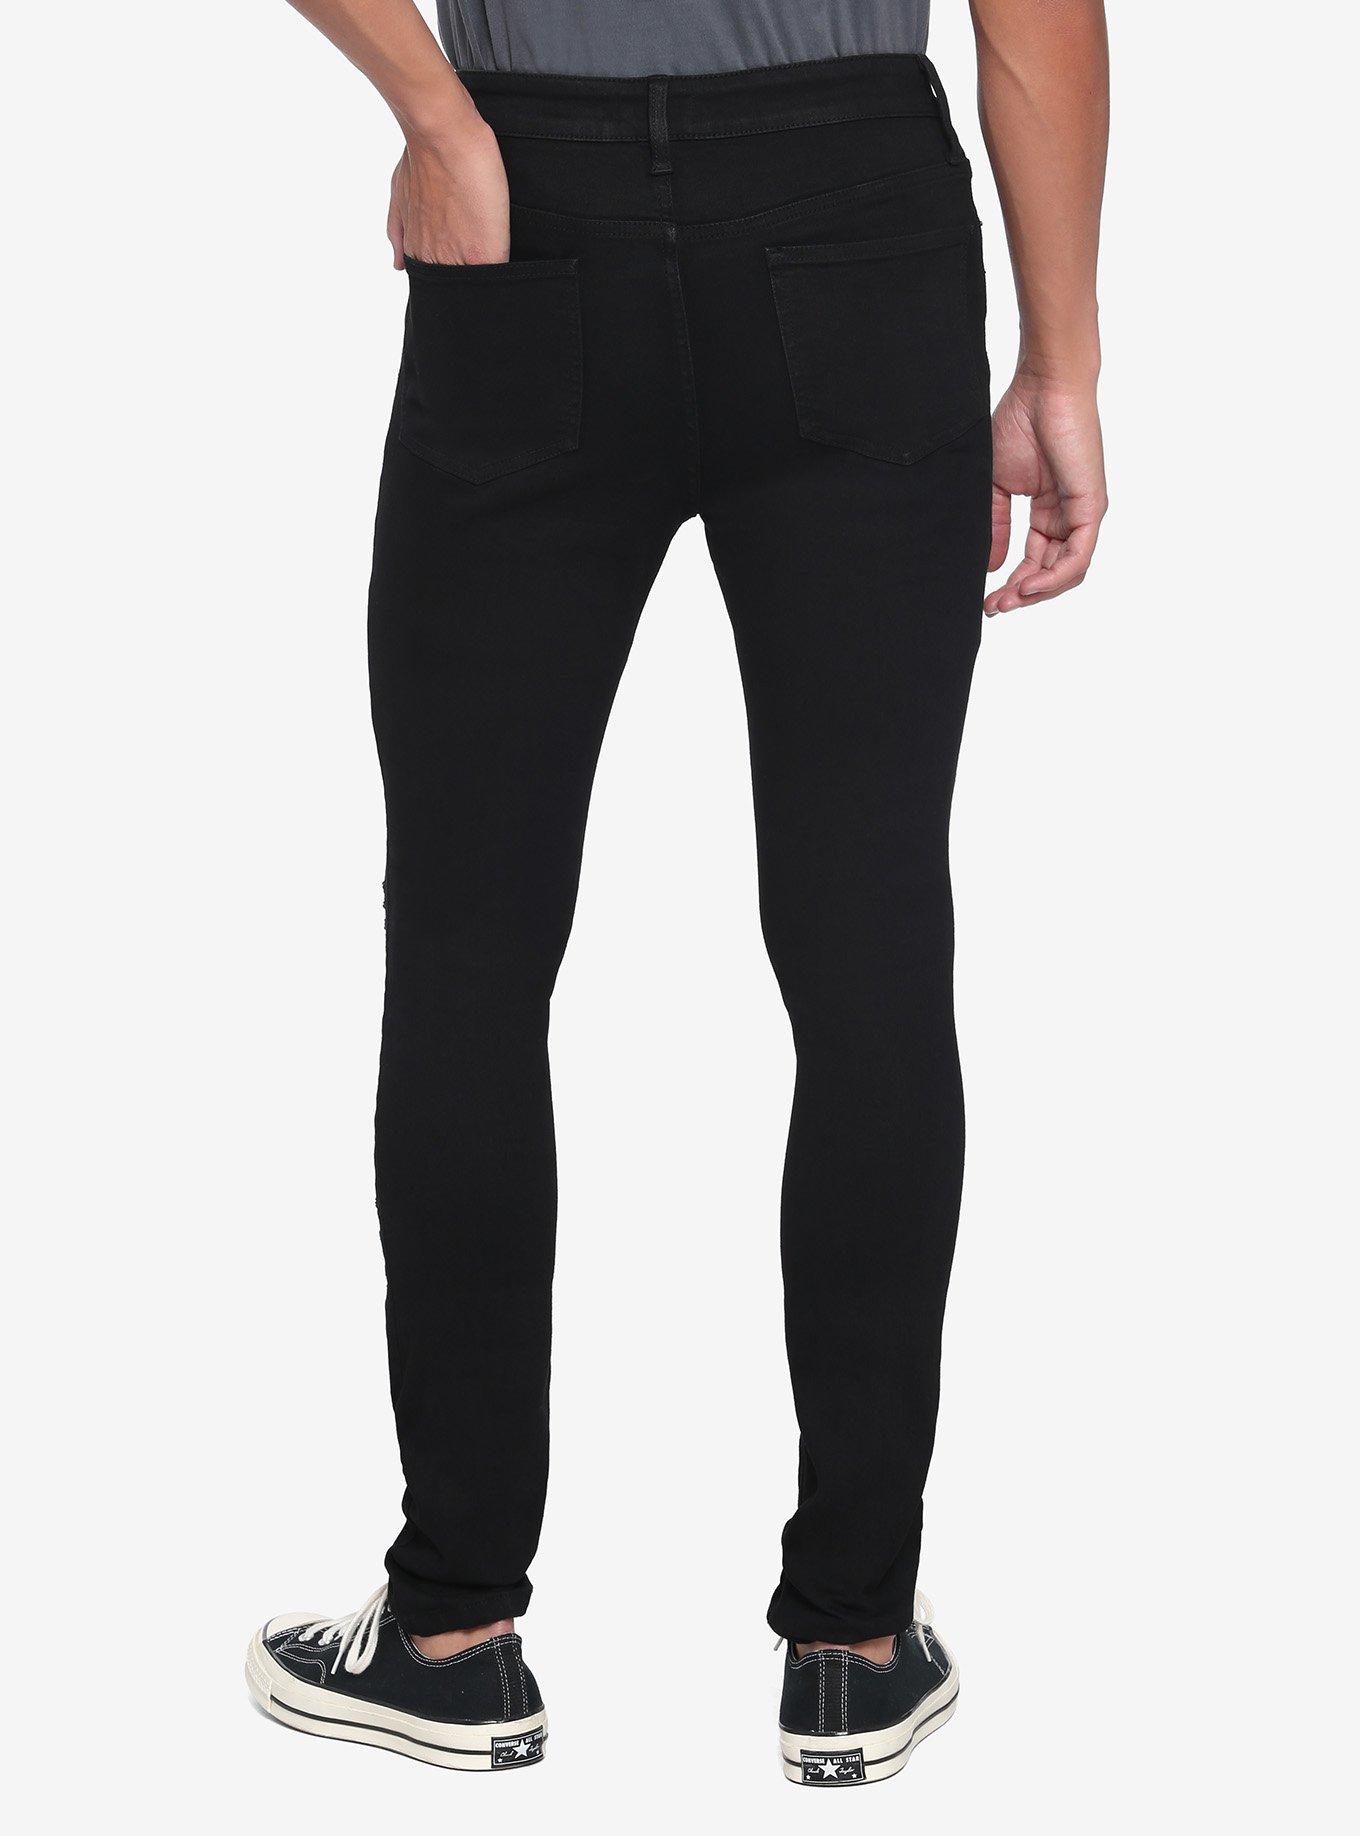 Black Destructed Skinny Jeans, BLACK, alternate